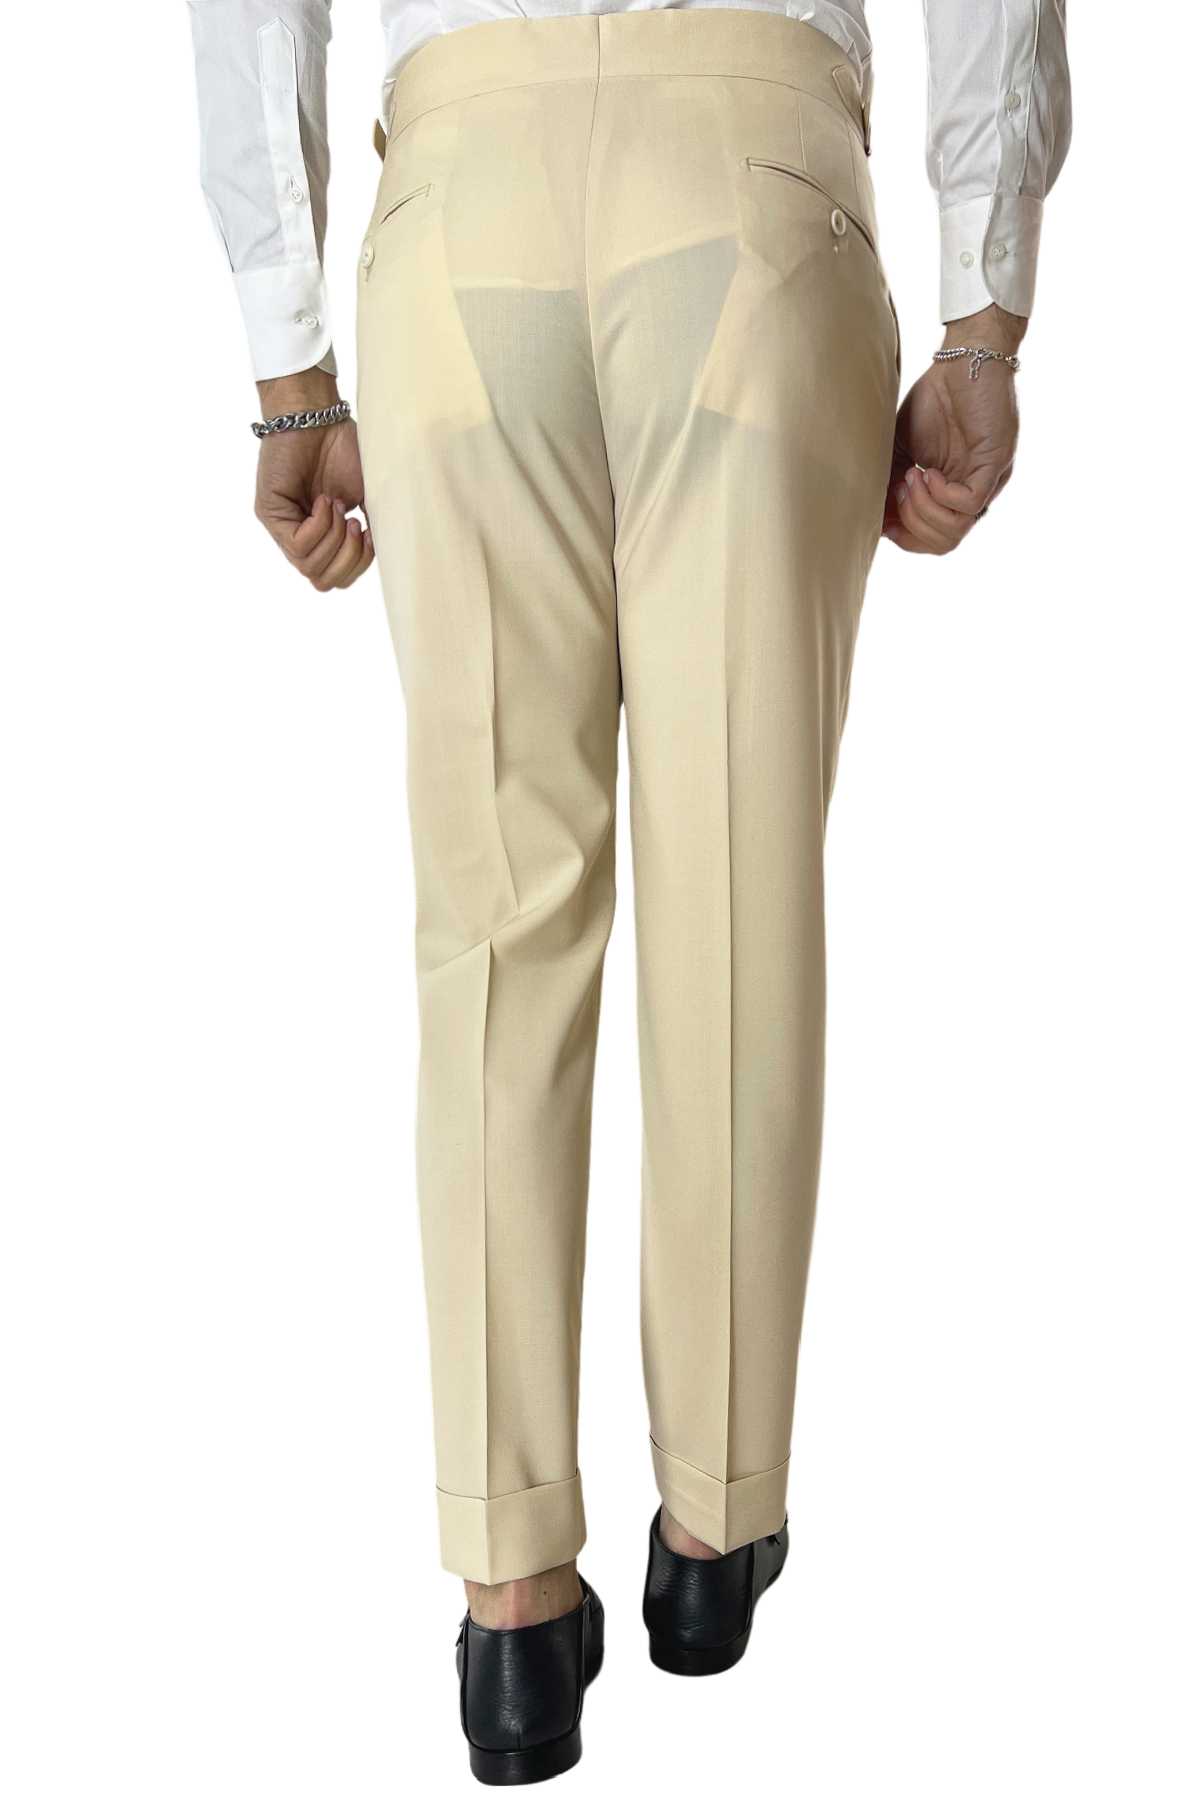 Abito uomo doppiopetto beige chiaro in fresco lana 100’s Holland & Sherry con pantalone vita alta